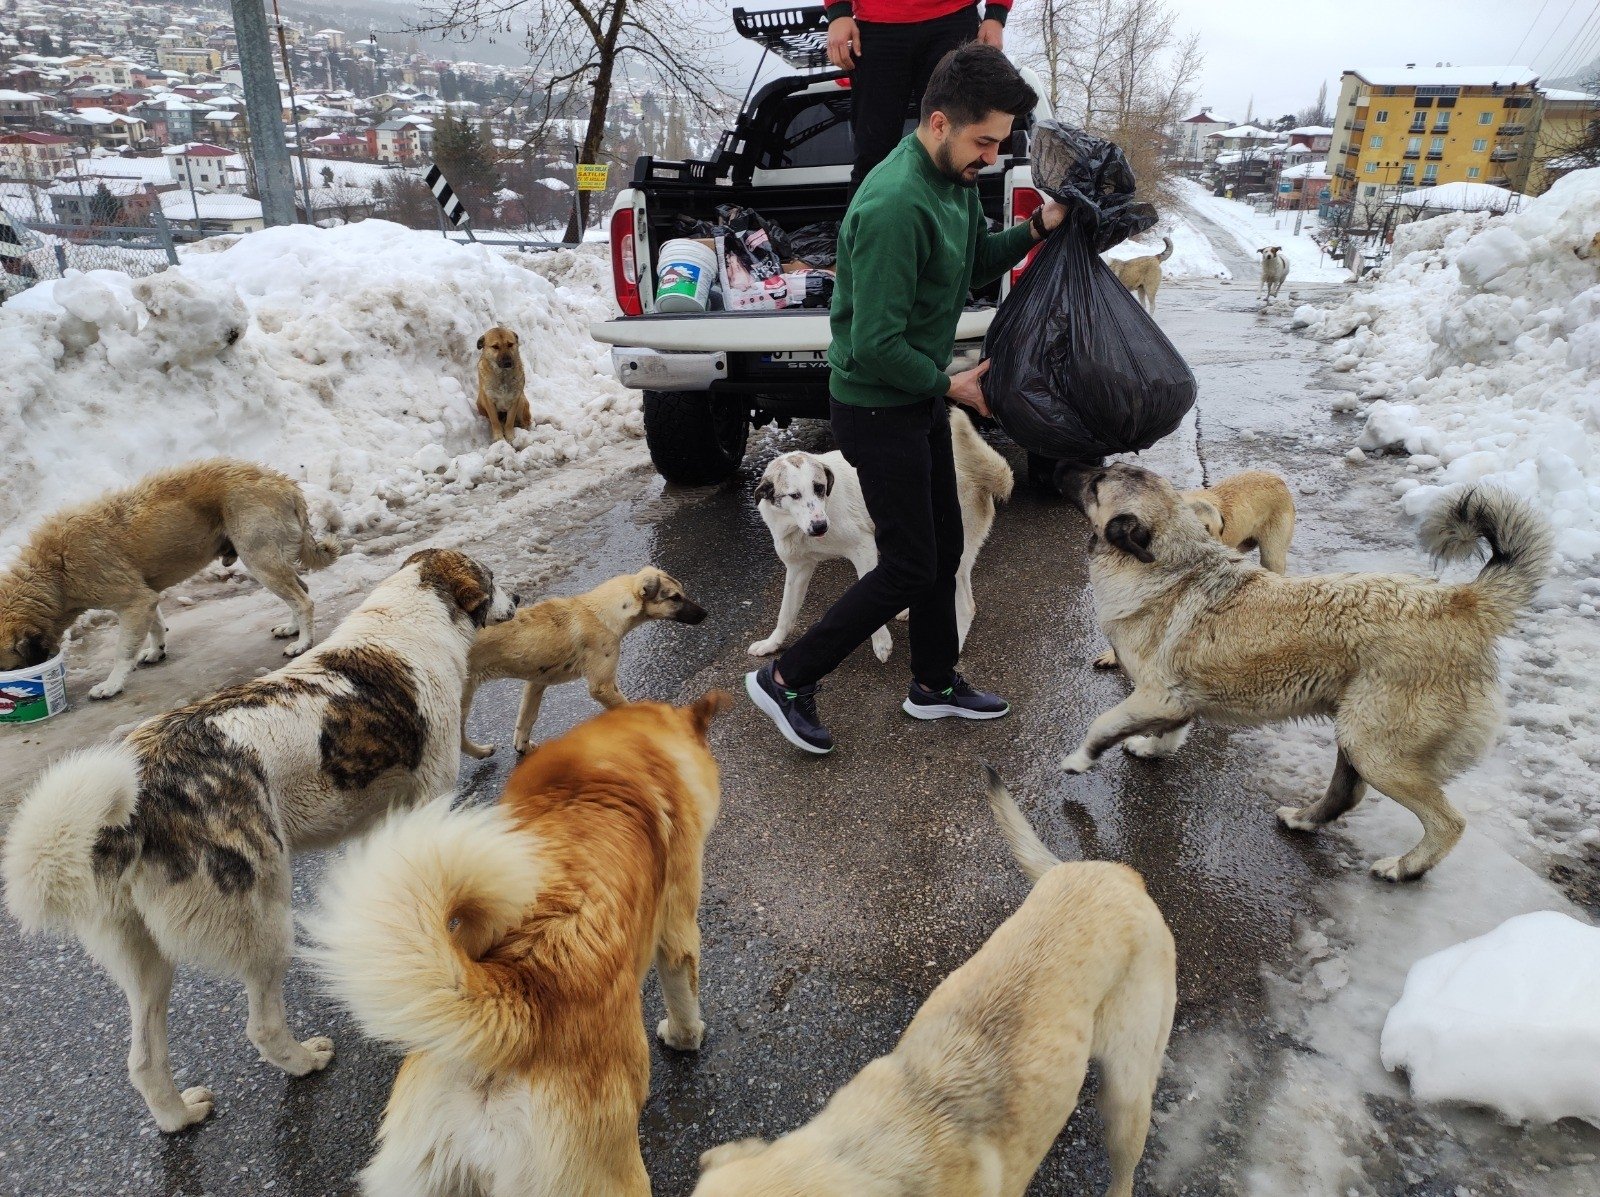 A person feeds stray dogs, Adana, Turkey, April 4, 2022. (IHA Photo)